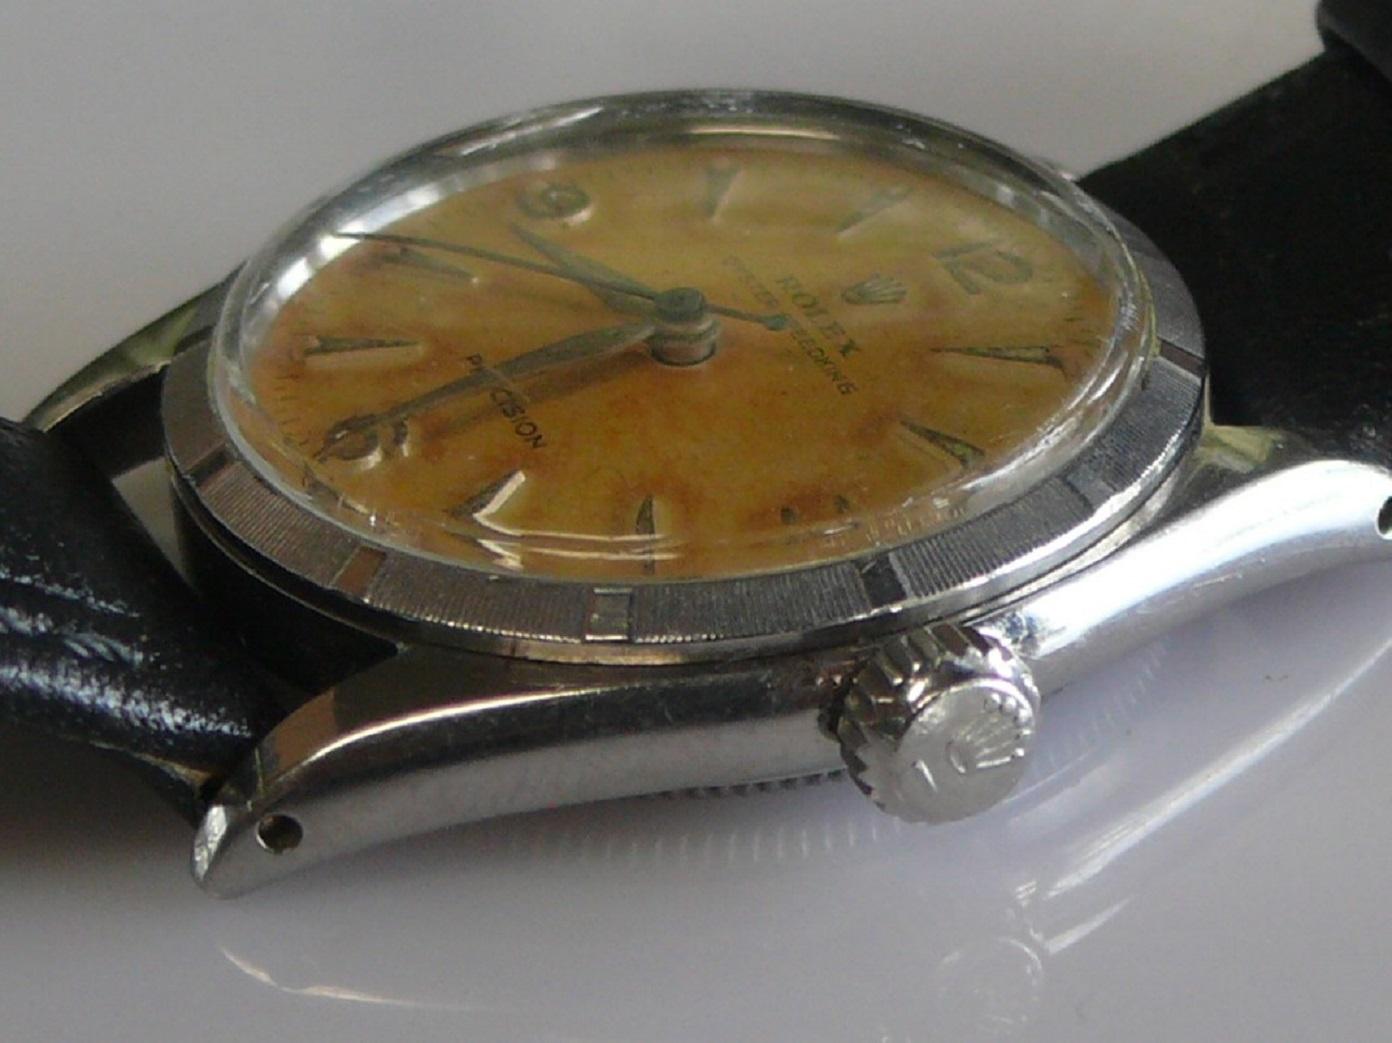 Circa 1930s Rolex Oyster Speedking Precision